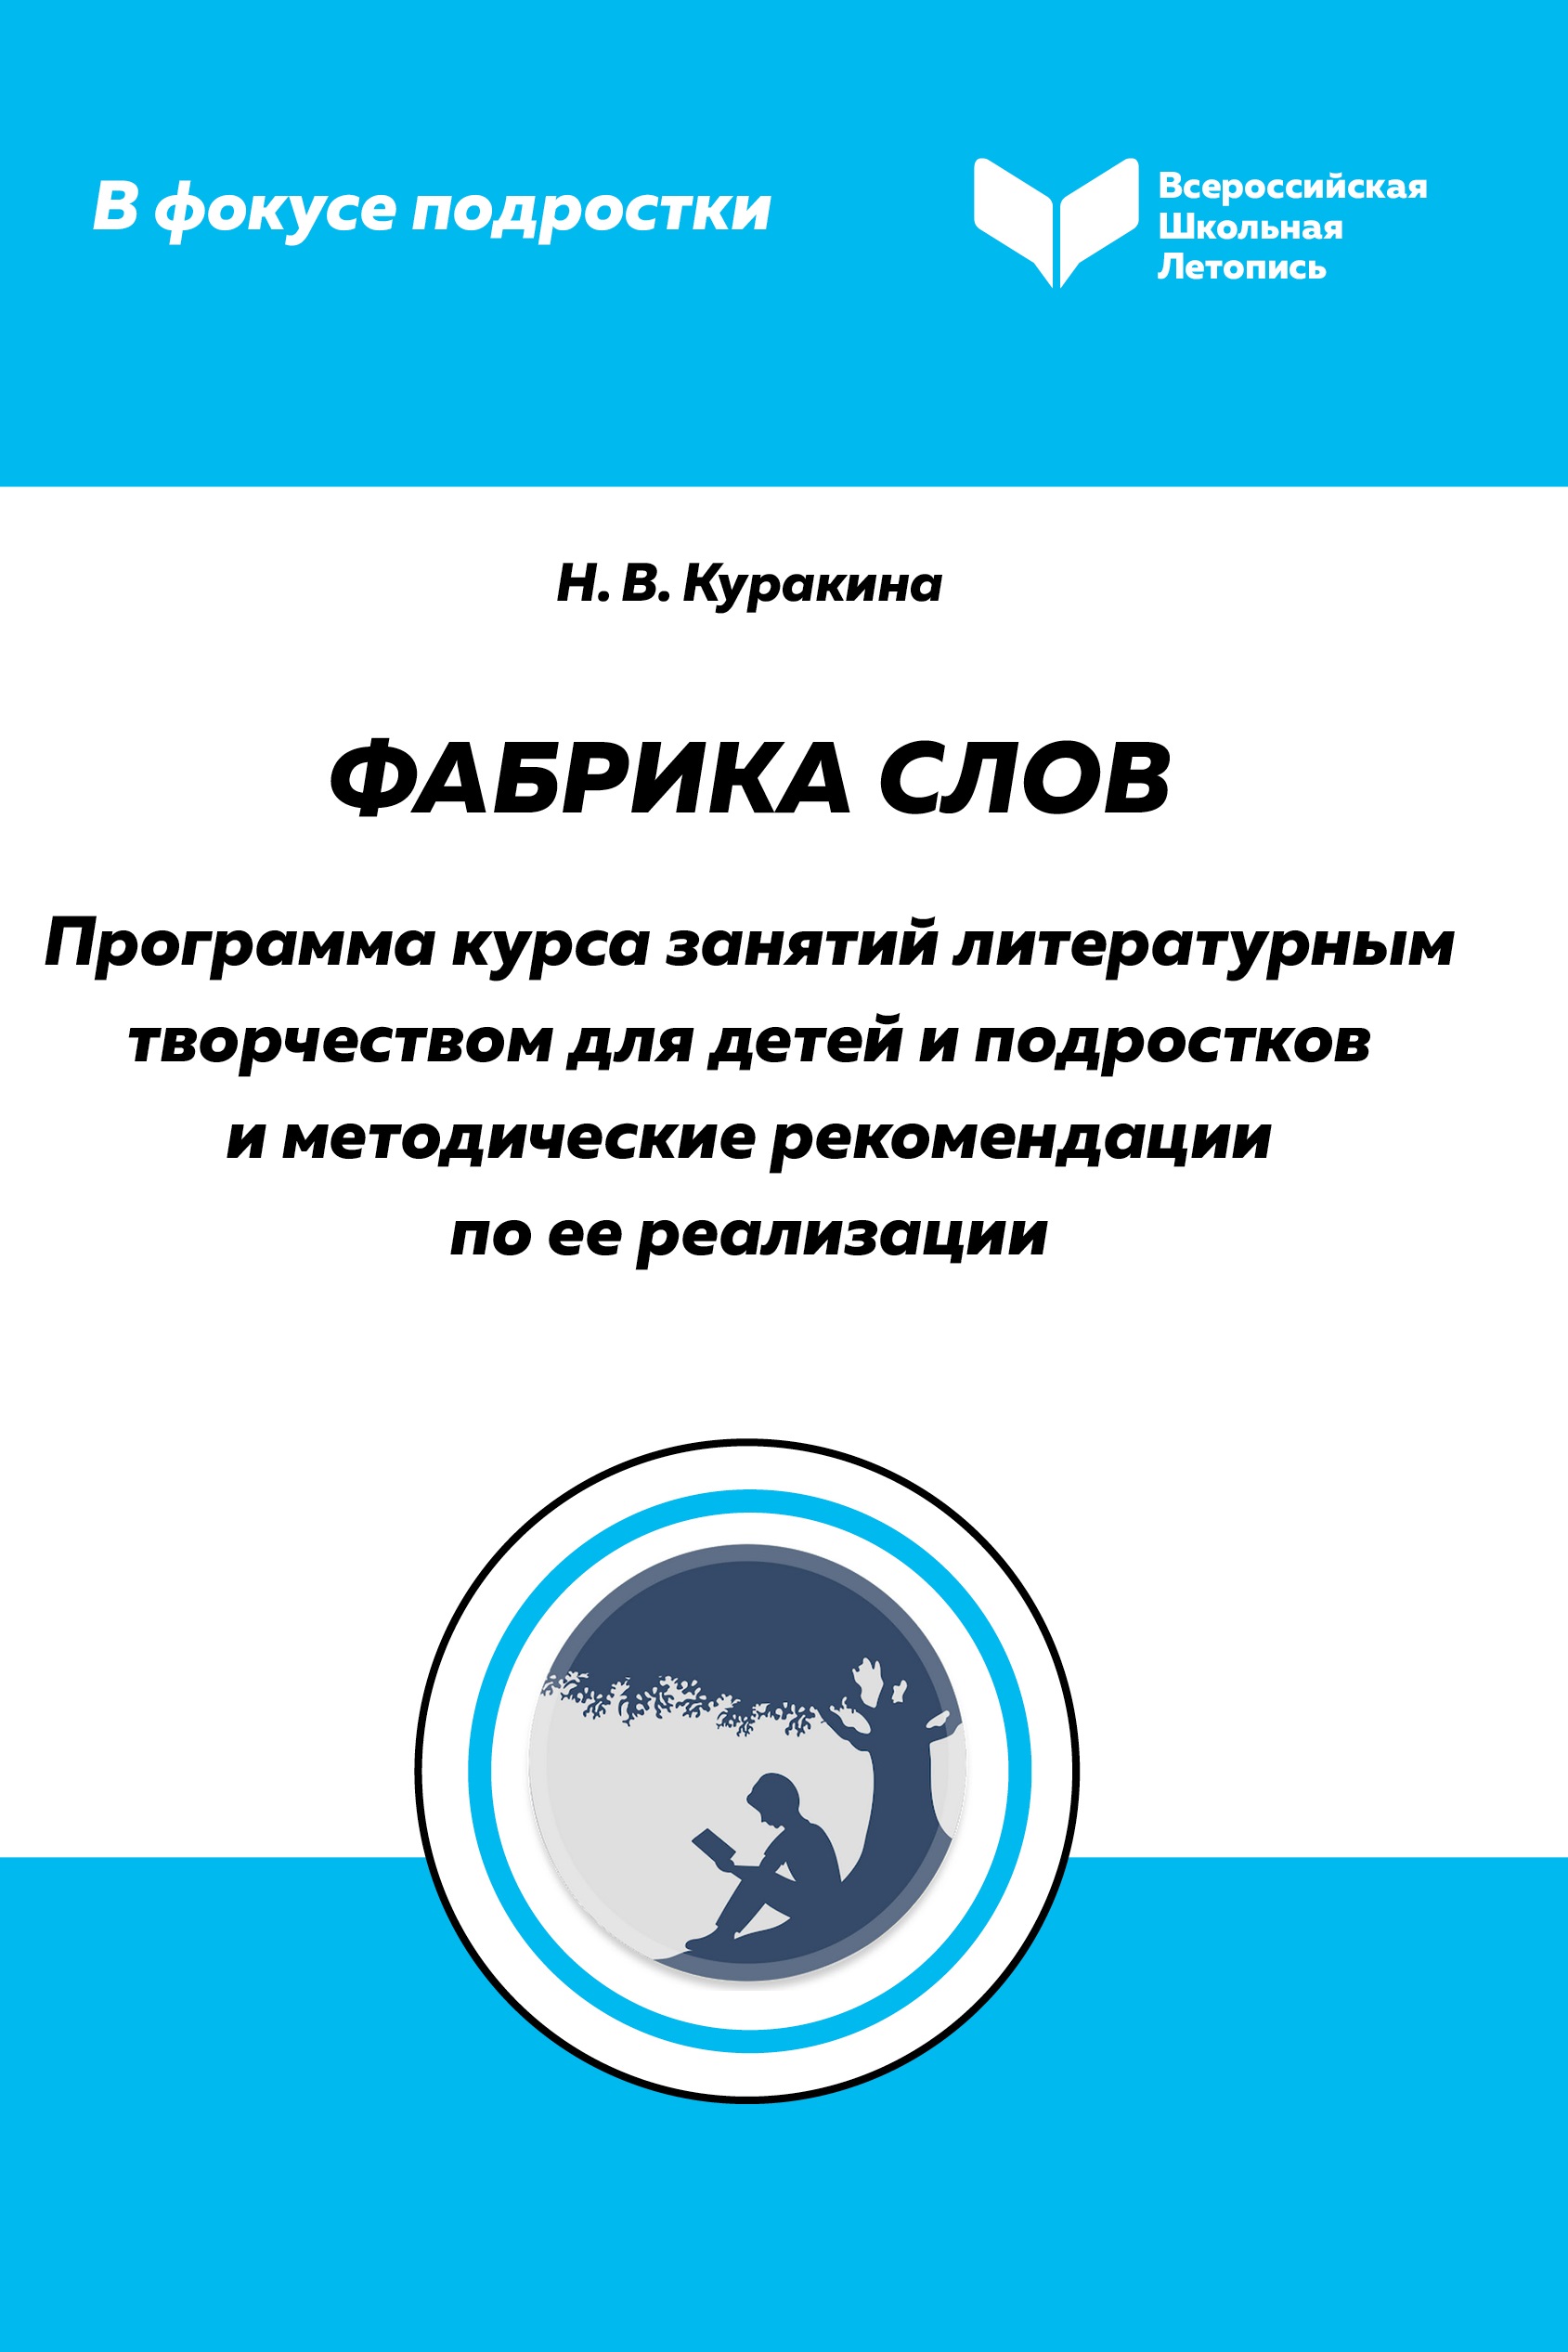 Библиотеки Петроградской стороны представили свое издание на Московской международной книжной ярмарке